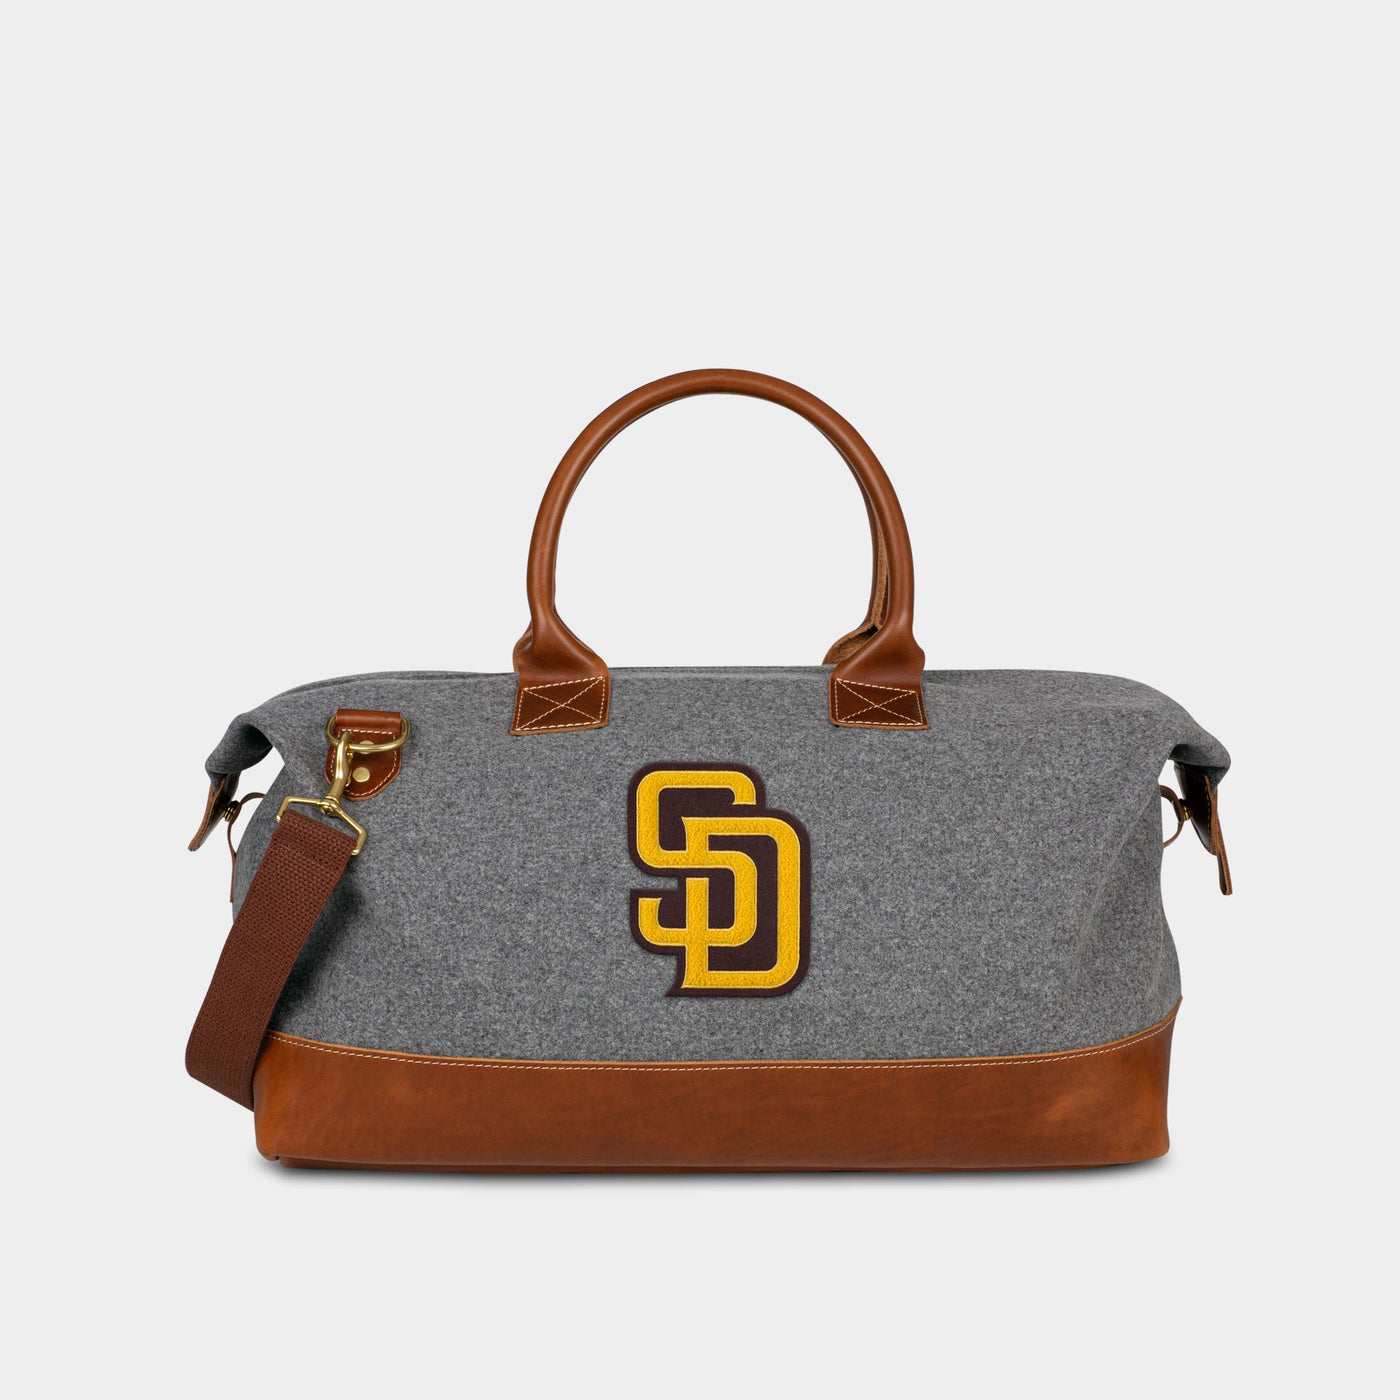 San Diego Padres "SD" Weekender Duffle Bag